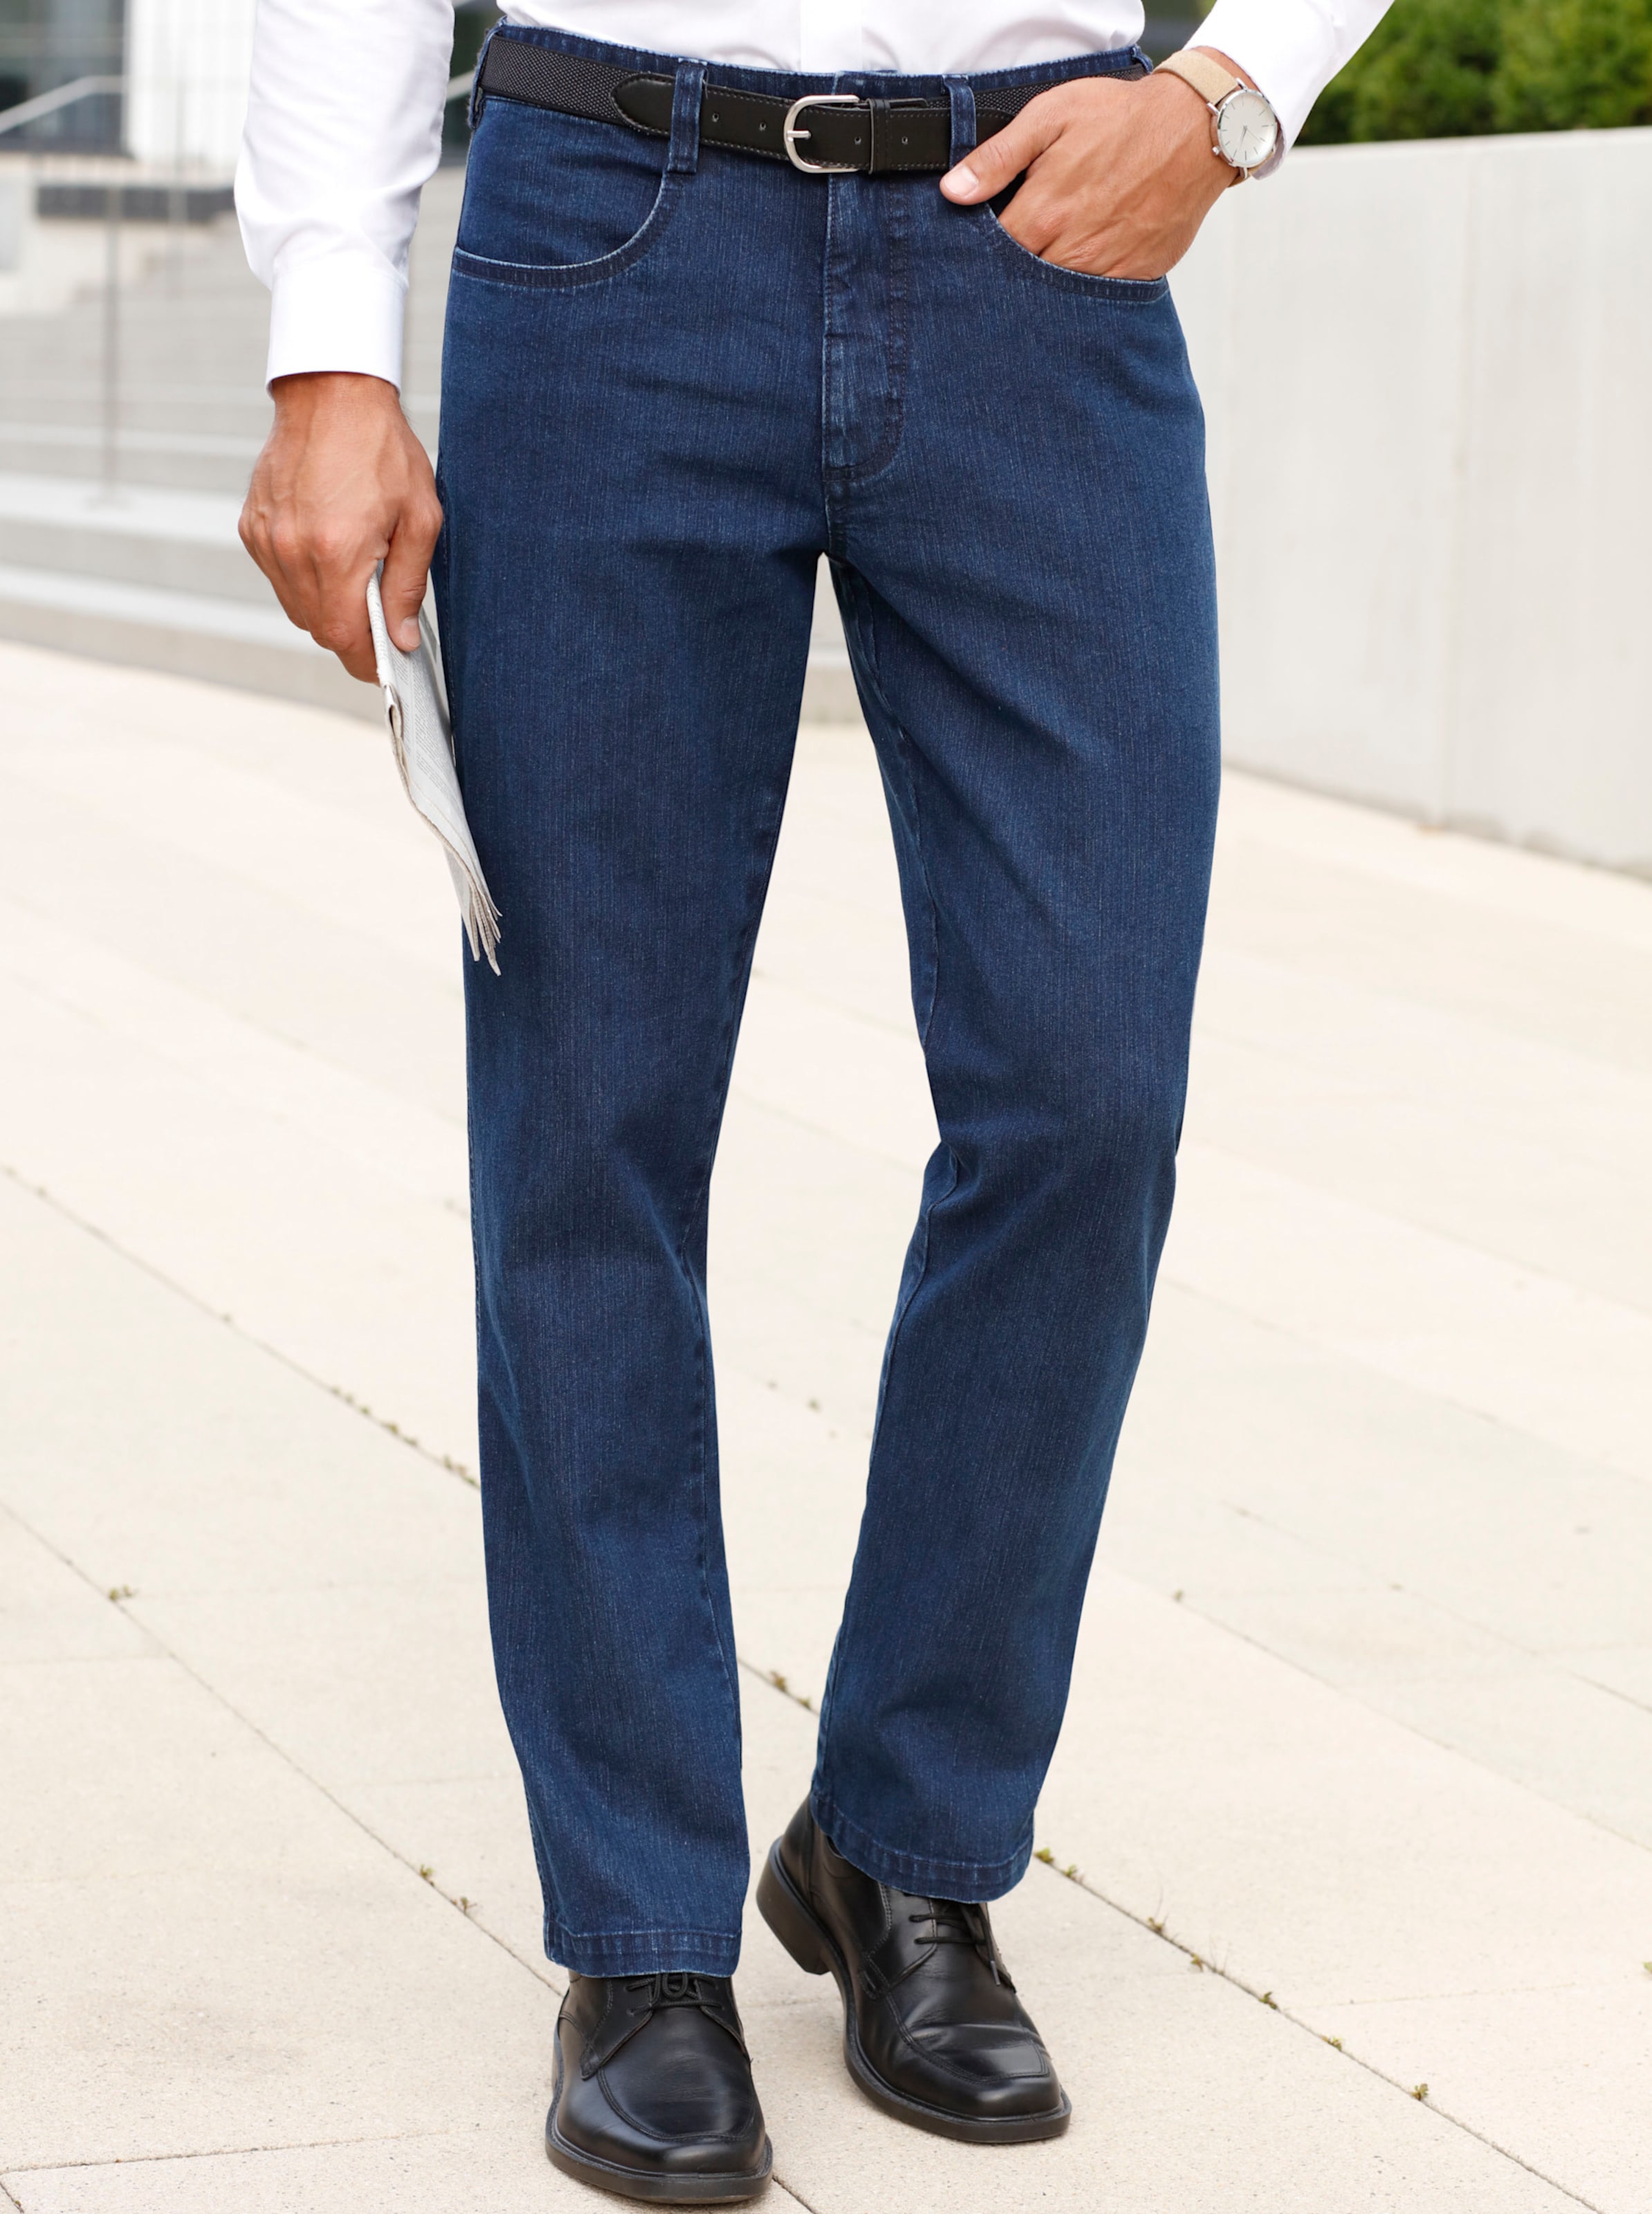 Witt Herren Jeans mit Gürtel, blue-stone-washed